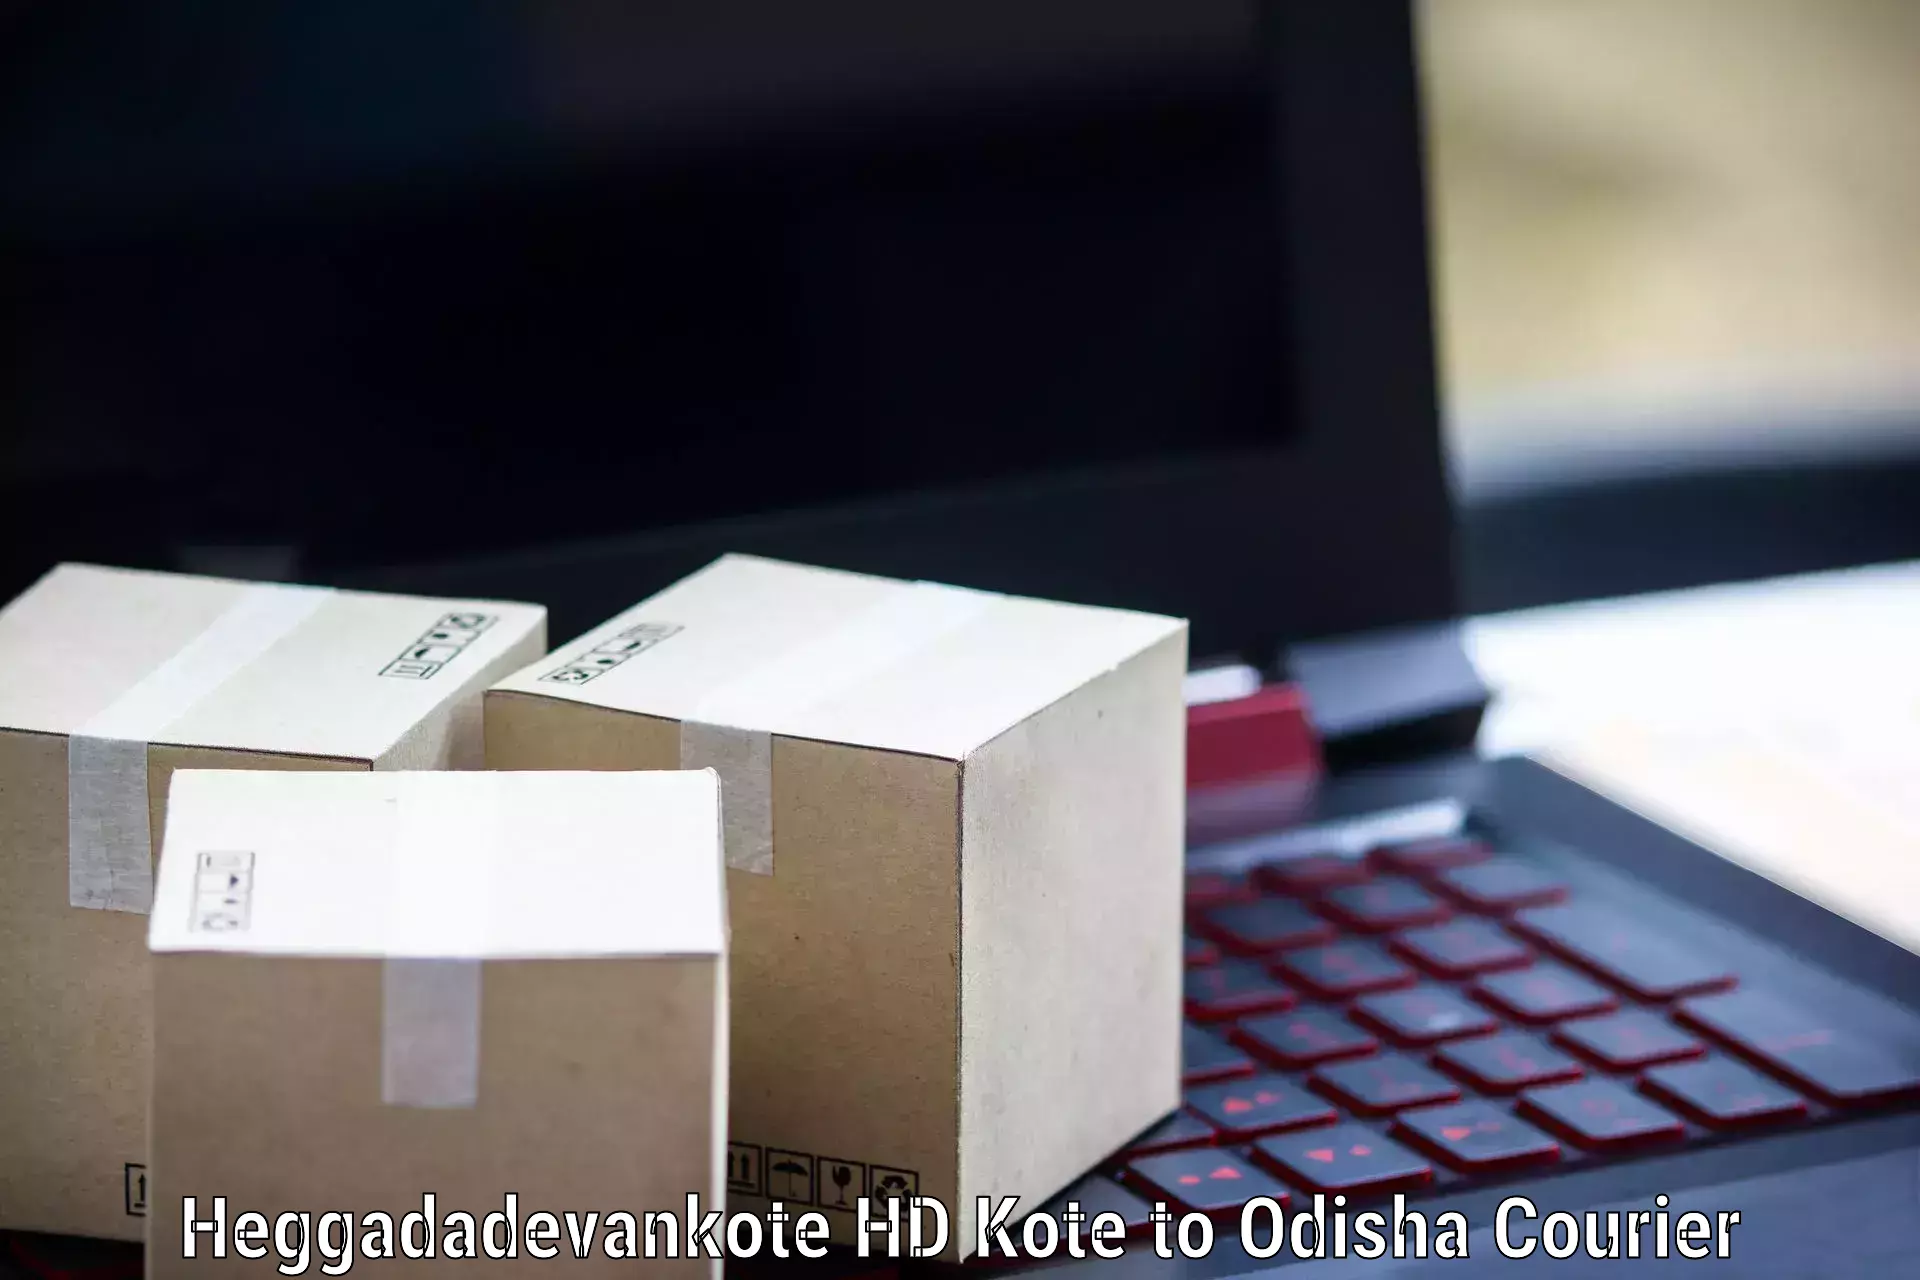 Courier service efficiency Heggadadevankote HD Kote to Komana